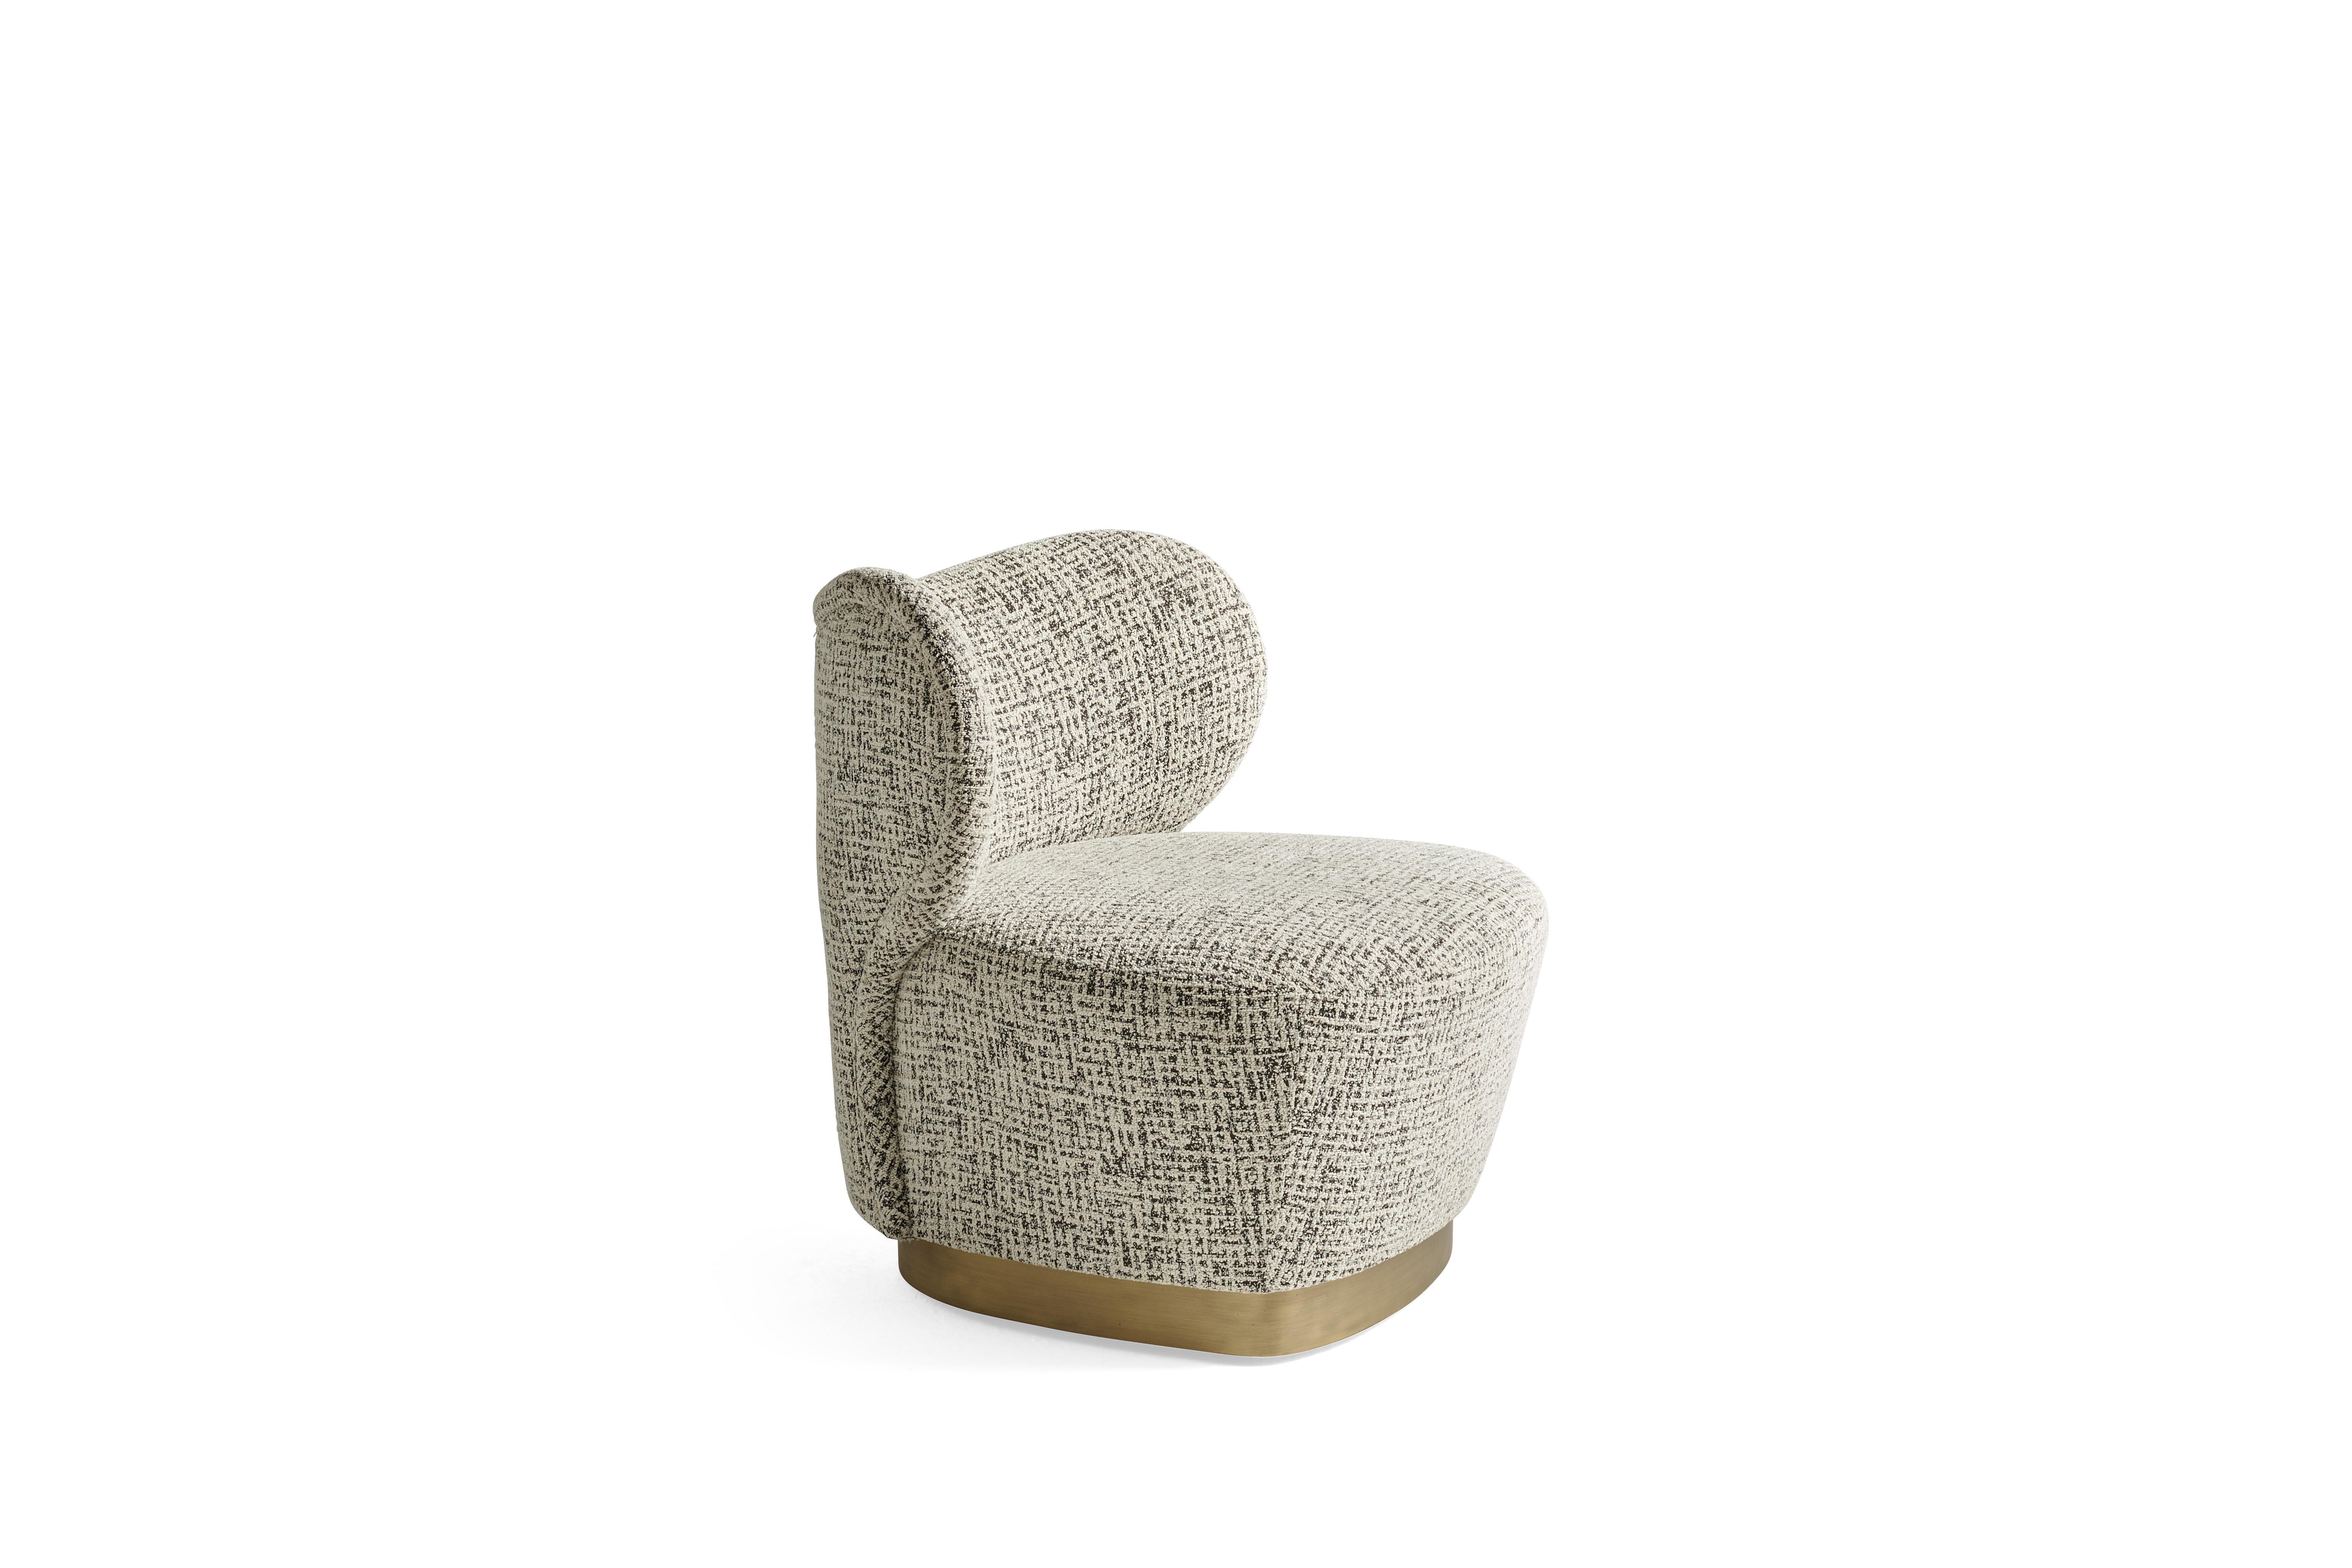 Retro-Geschmack und weiche, abgerundete Formen für den Sessel Marvila. Die raffinierte Eleganz und die kompakten Proportionen werden durch den bronzierten Sockel unterstrichen, ein Detail, das dem Ganzen einen raffinierten dekorativen Reiz